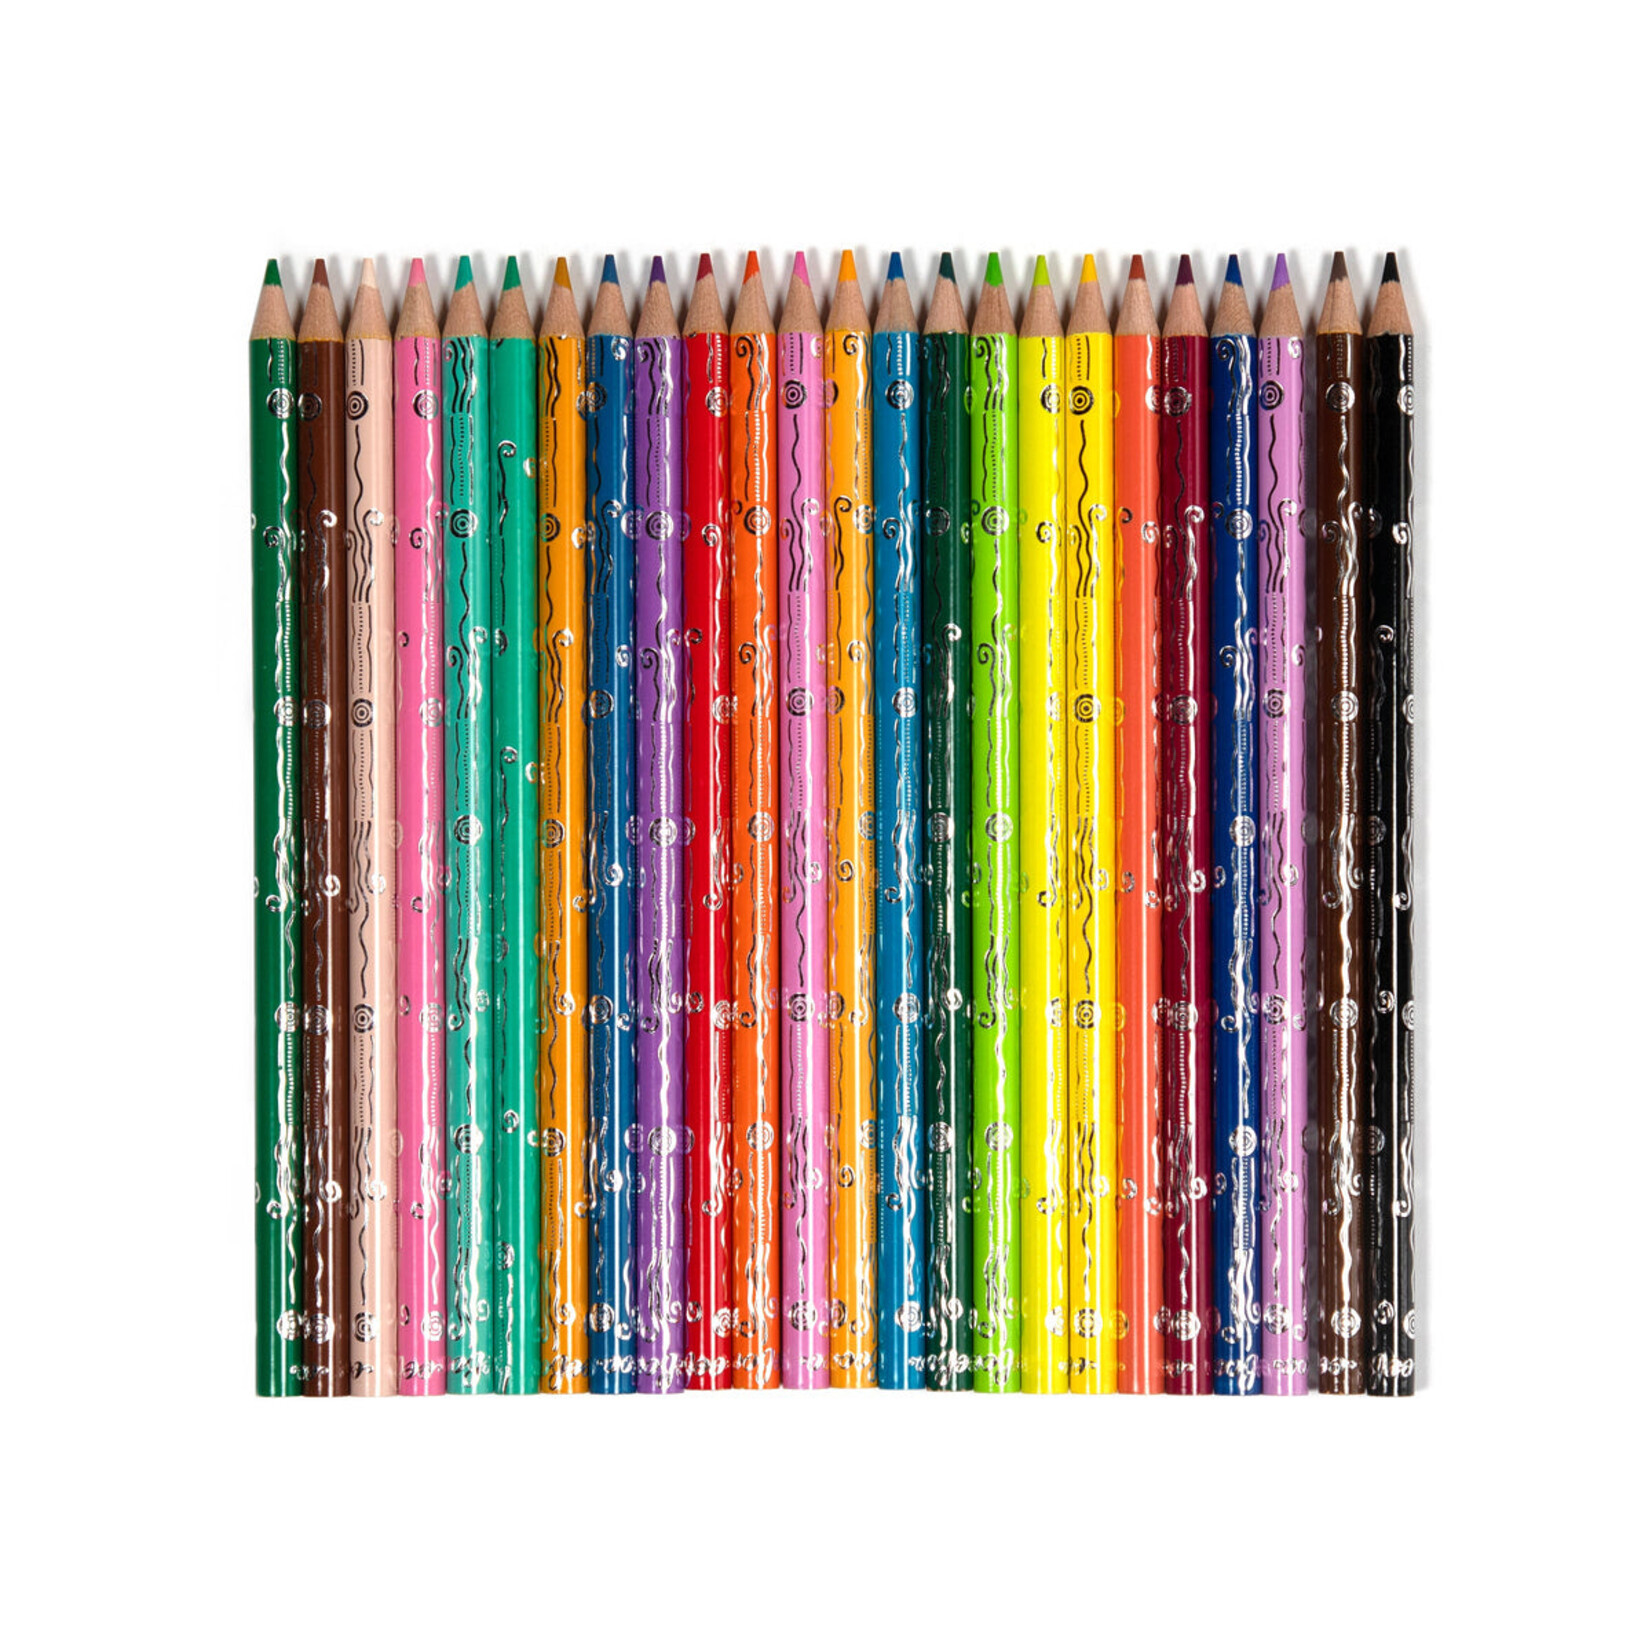 Eeboo Seaside Garden 24 Watercolor Pencils